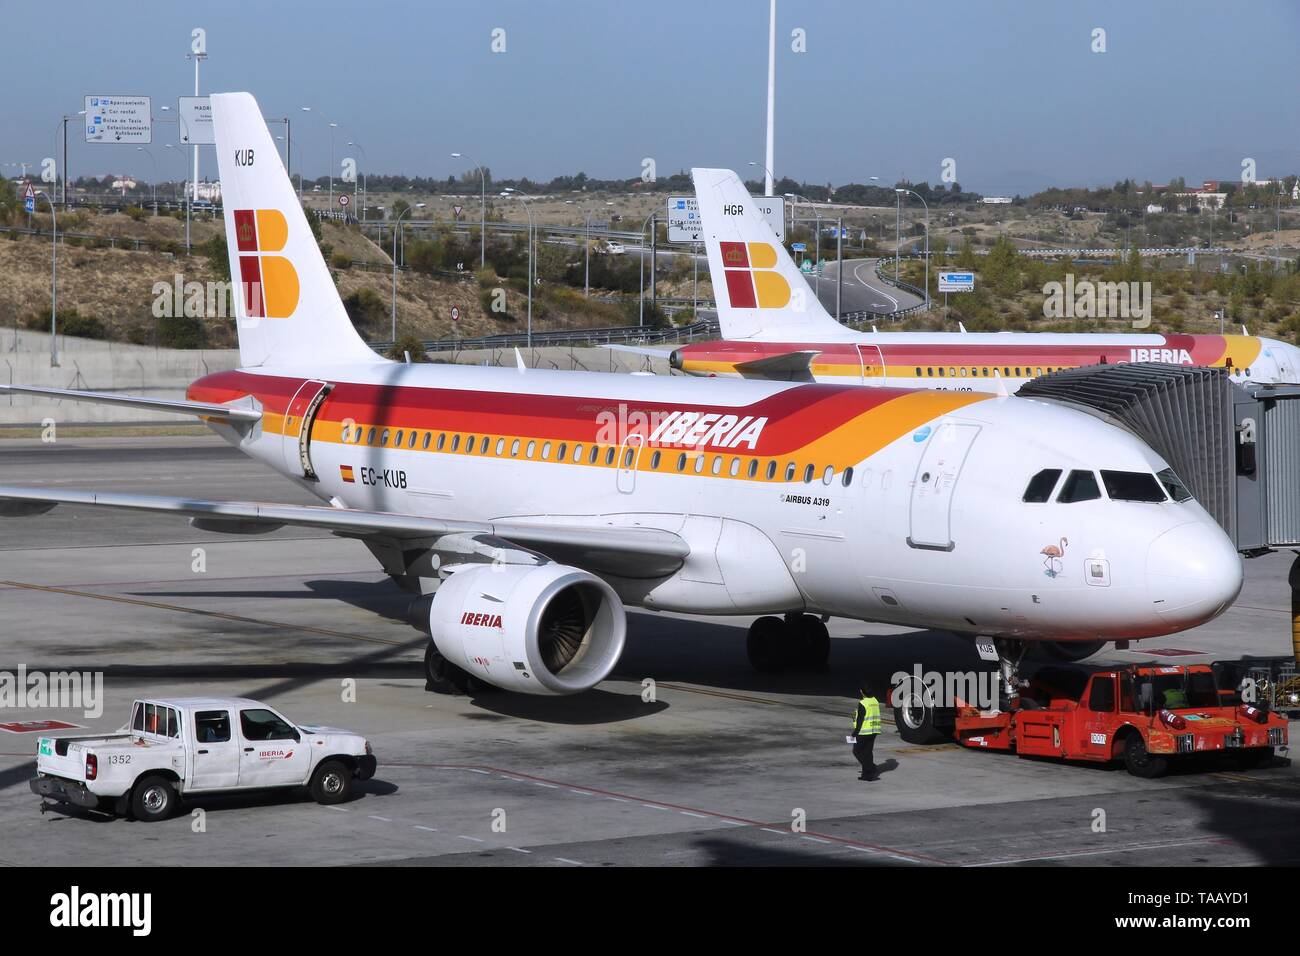 MADRID, Spagna - 20 ottobre 2014: compagnia aerea Iberia Airbus A319 all'aeroporto Barajas di Madrid. Iberia è parte di International Airlines Group (IAG, genitore co Foto Stock